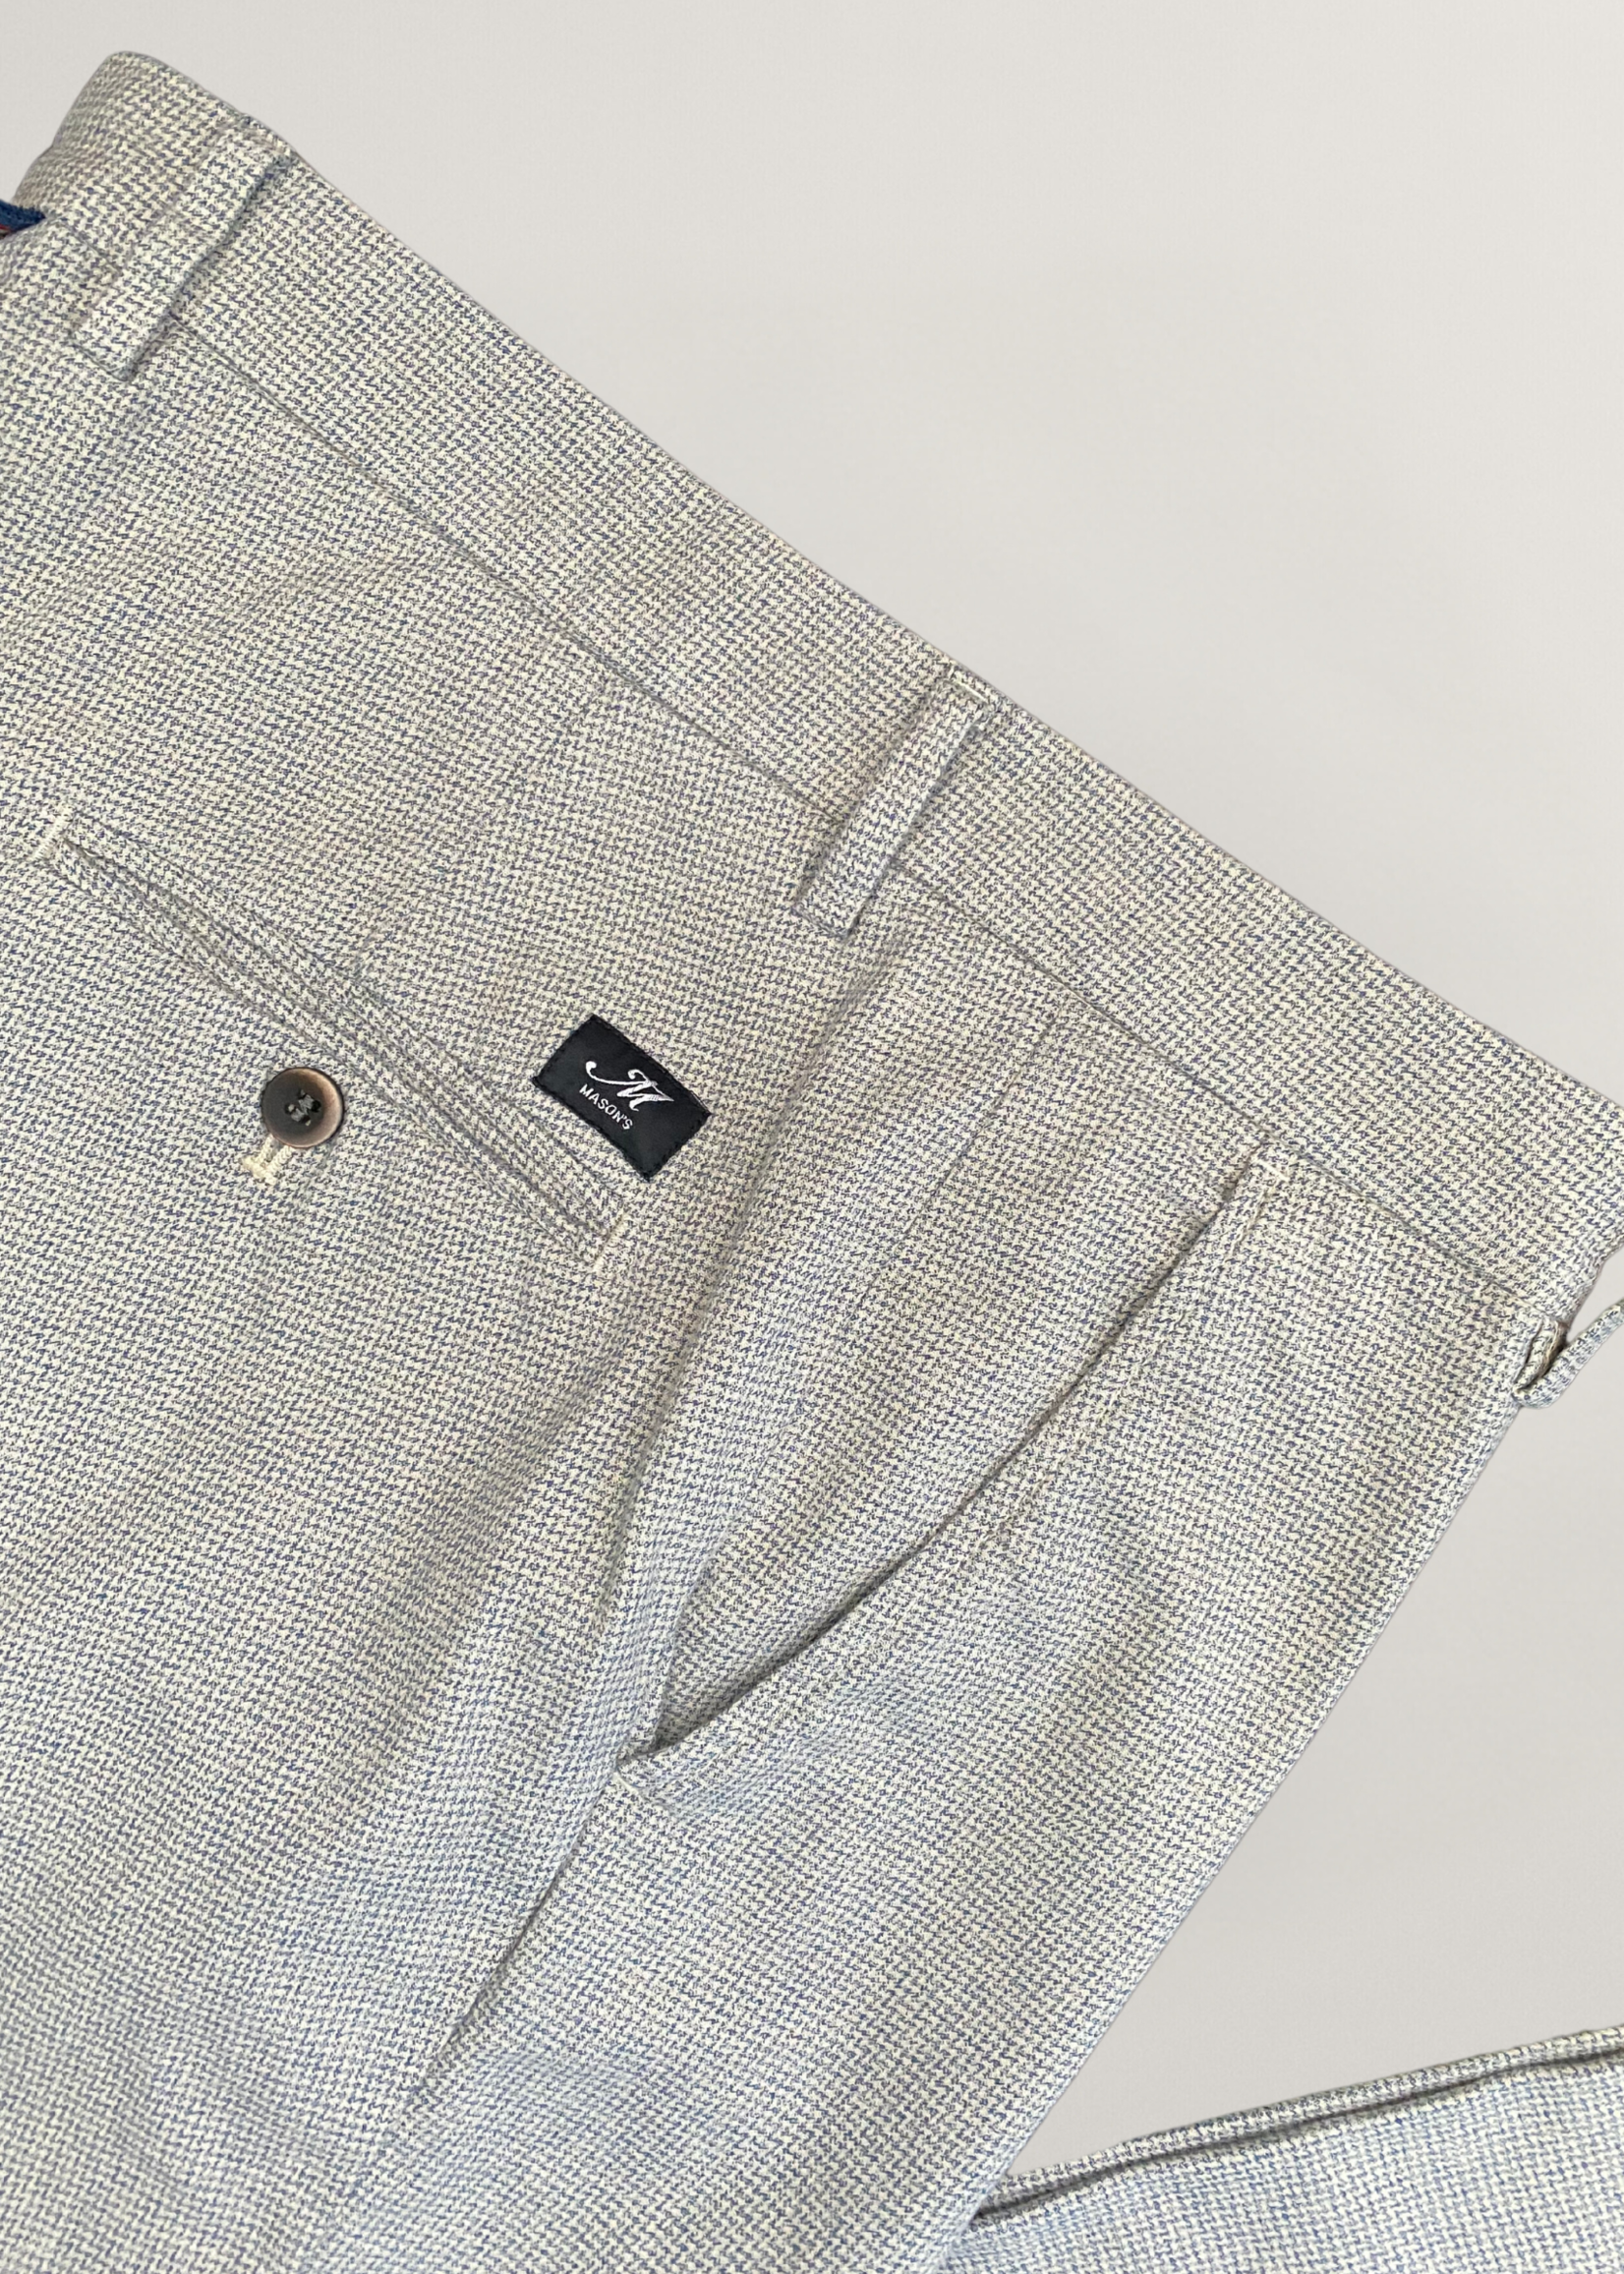 MASON'S Torino Style heren slim-fit katoenen broek met micropatroon - Beige